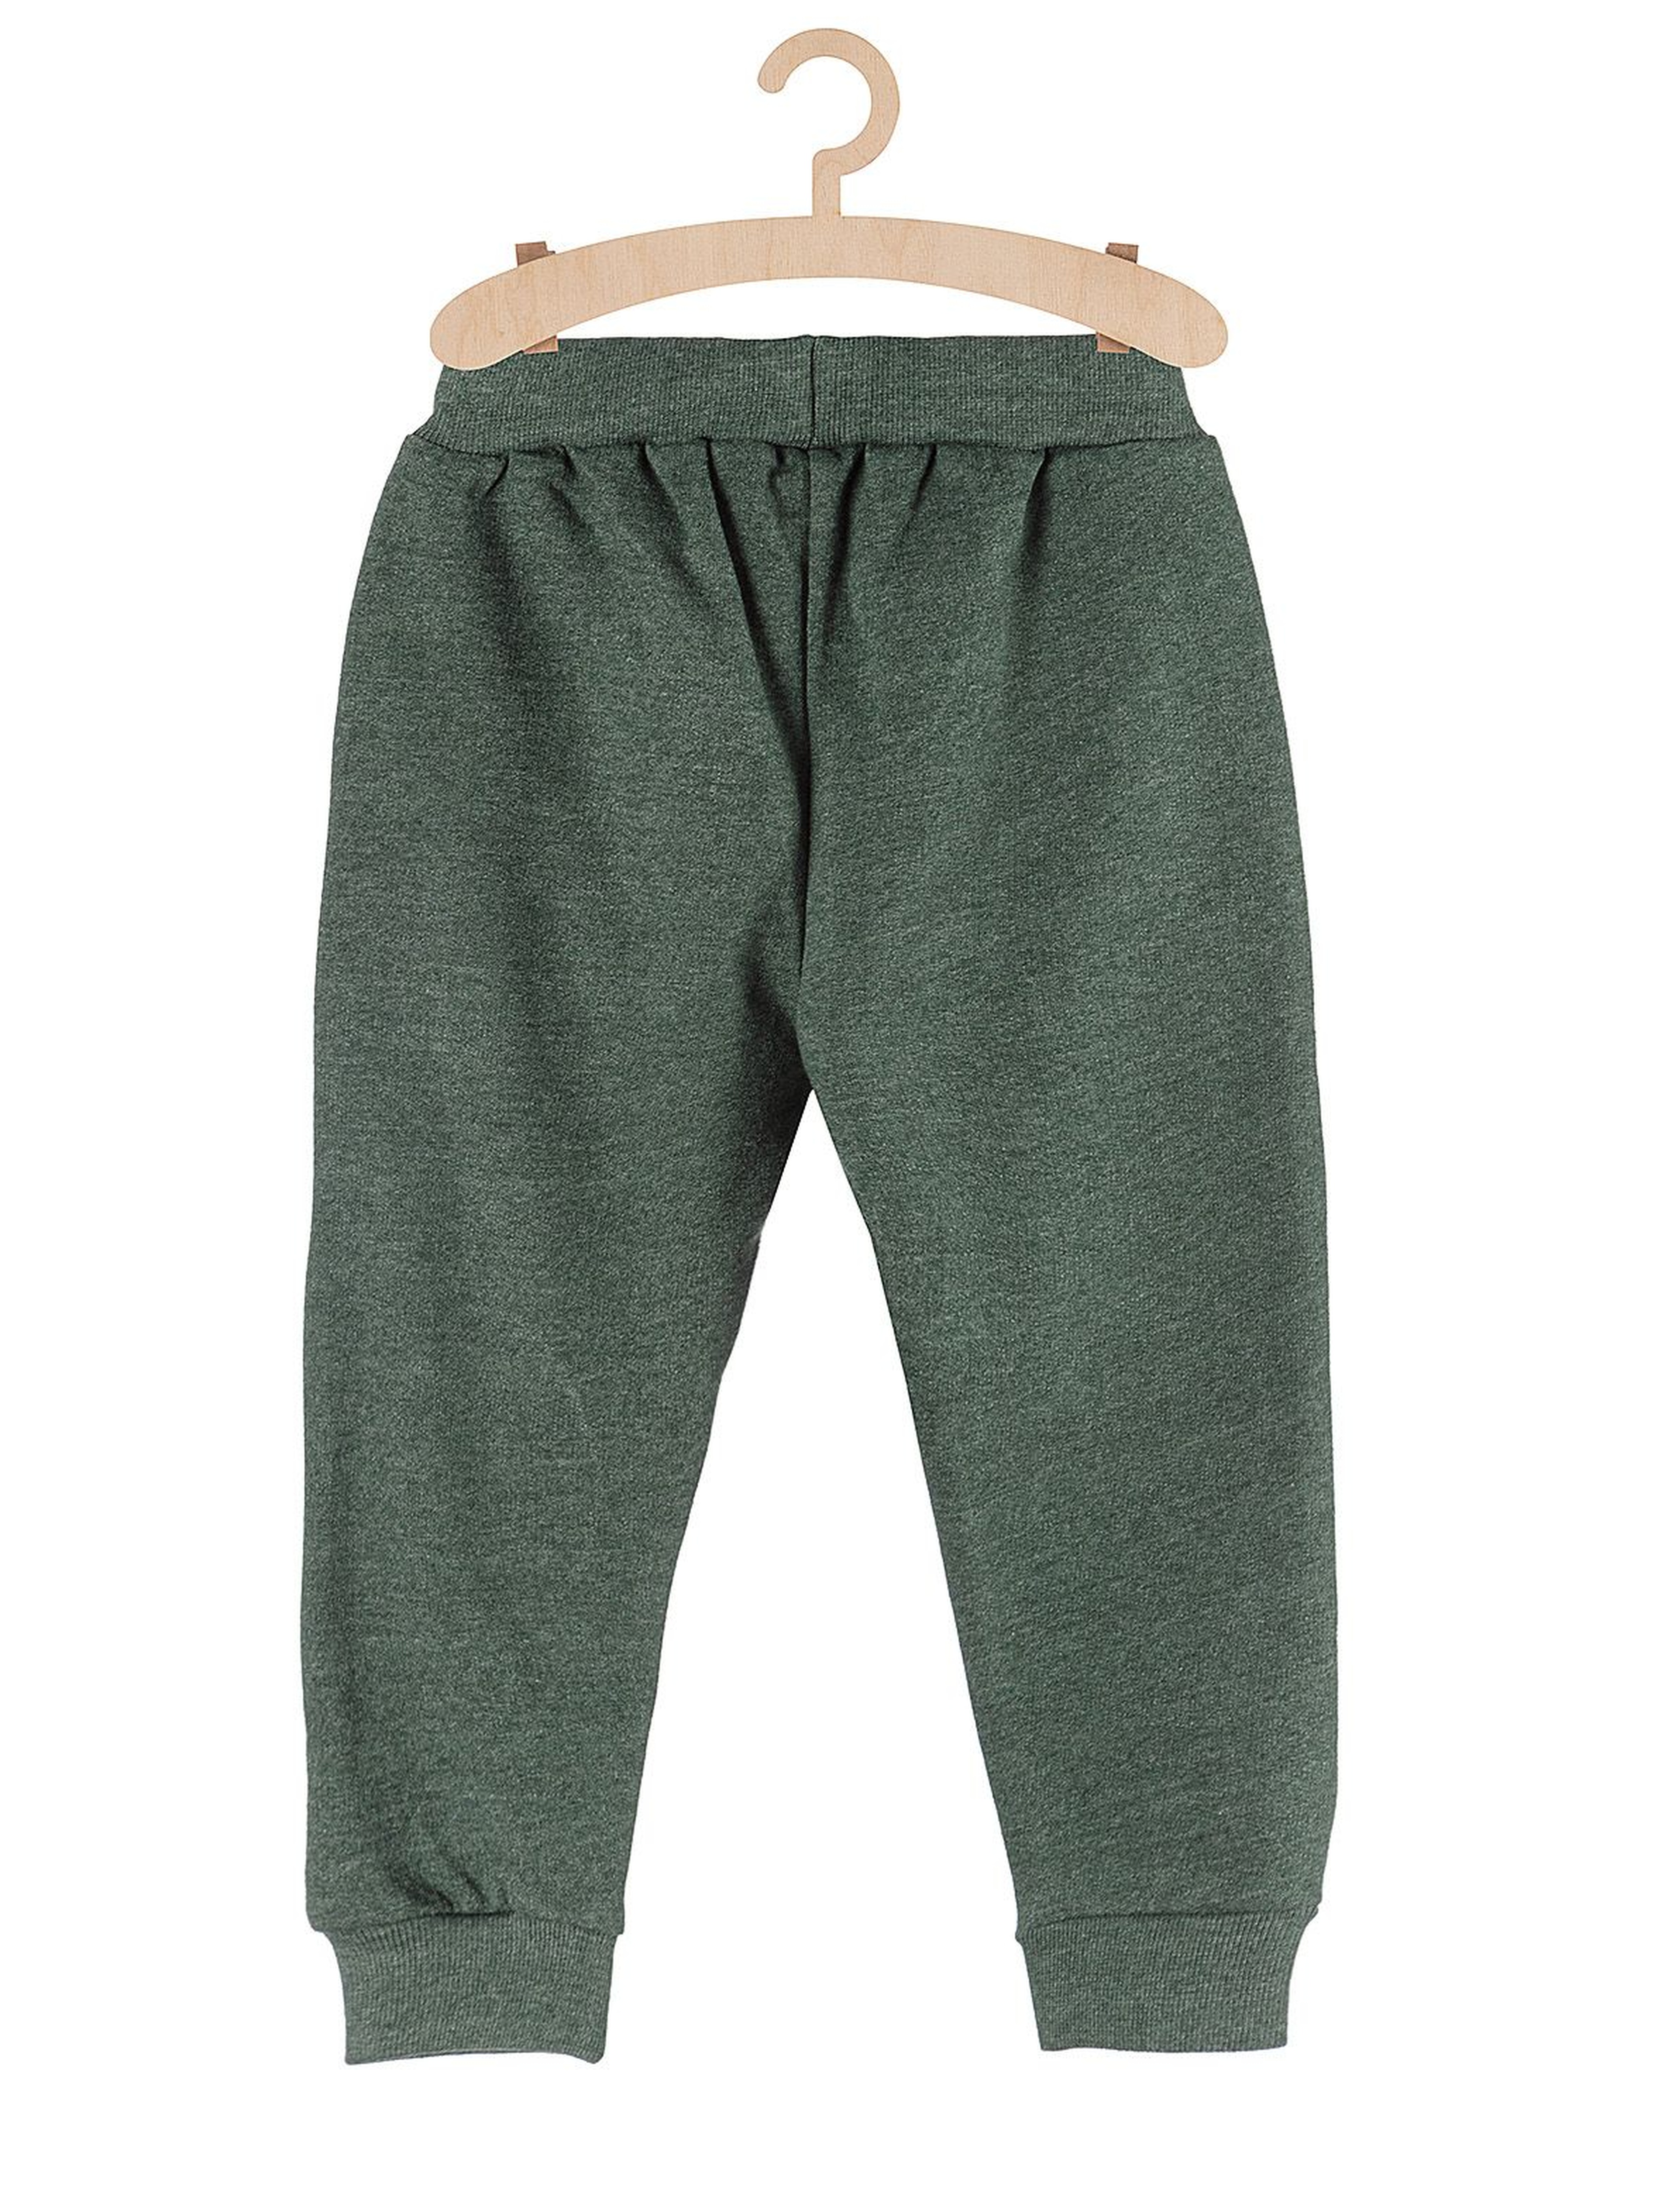 Dresowe spodnie dla chłopca-zielone z naszywkami